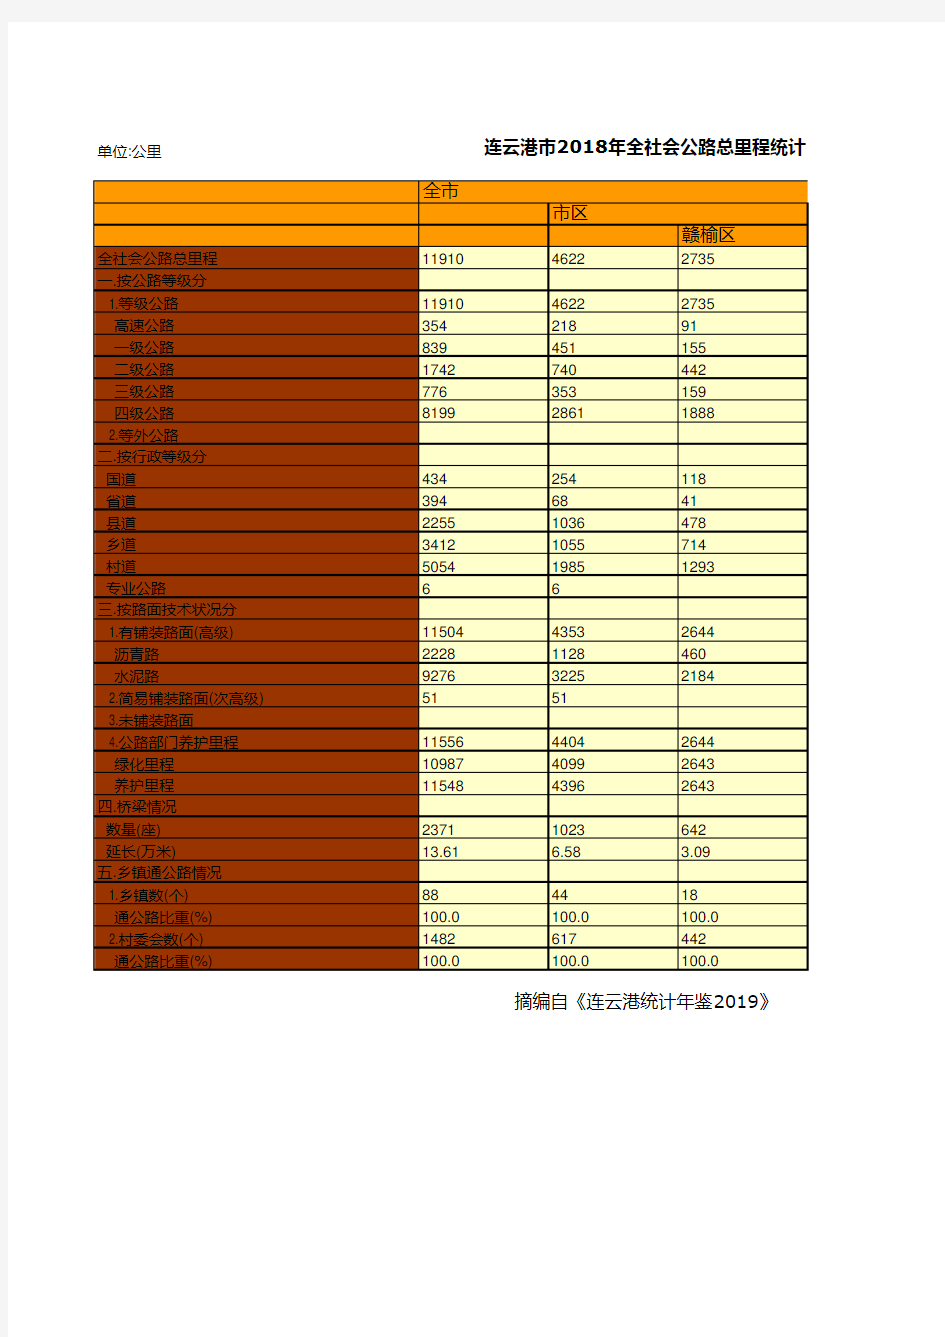 连云港市统计年鉴社会经济发展指标数据：2018年全社会公路总里程统计